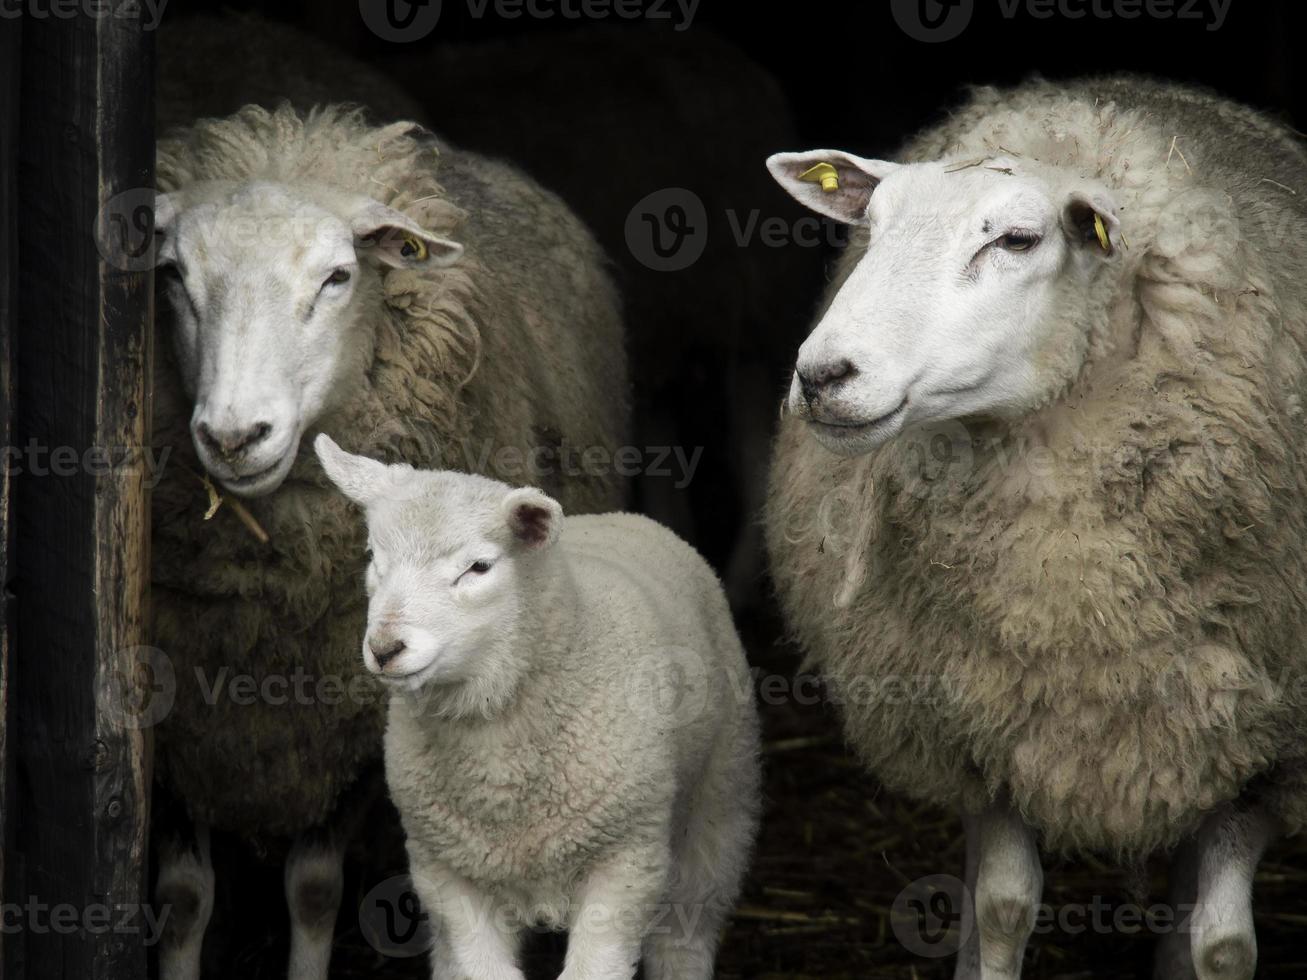 sheeps in westphalia photo